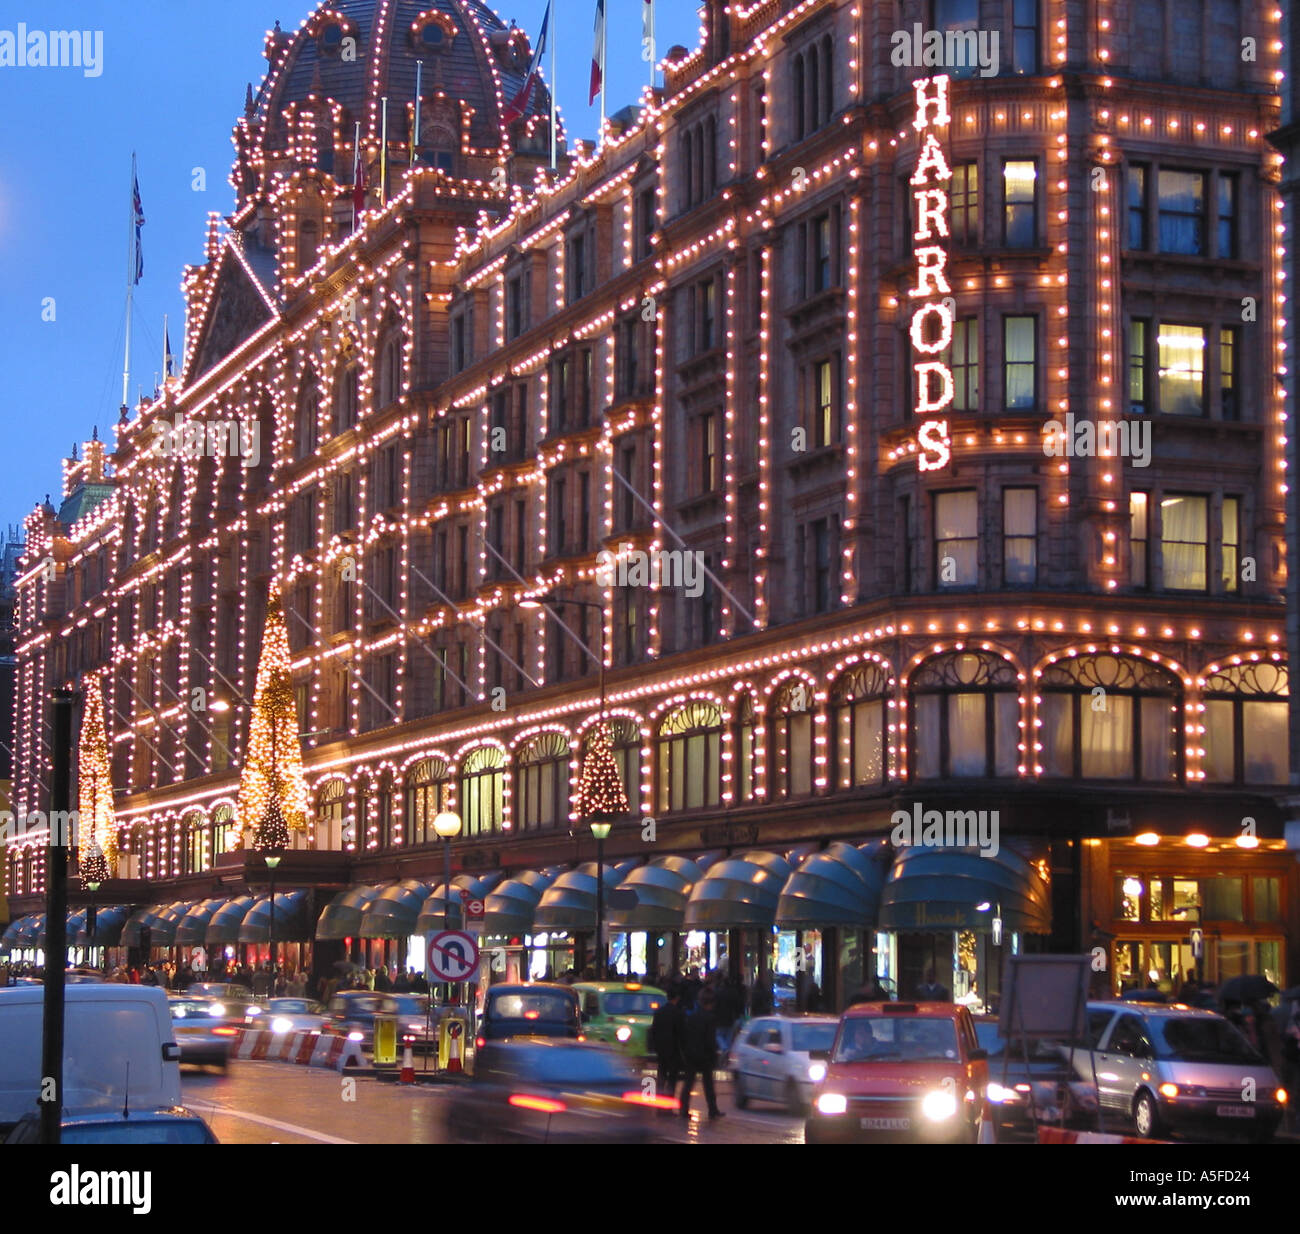 Harrods illuminé la nuit, Brompton Road, Knightsbridge, Royal Borough de Kensington et Chelsea, Londres, Angleterre, Royaume-Uni Banque D'Images